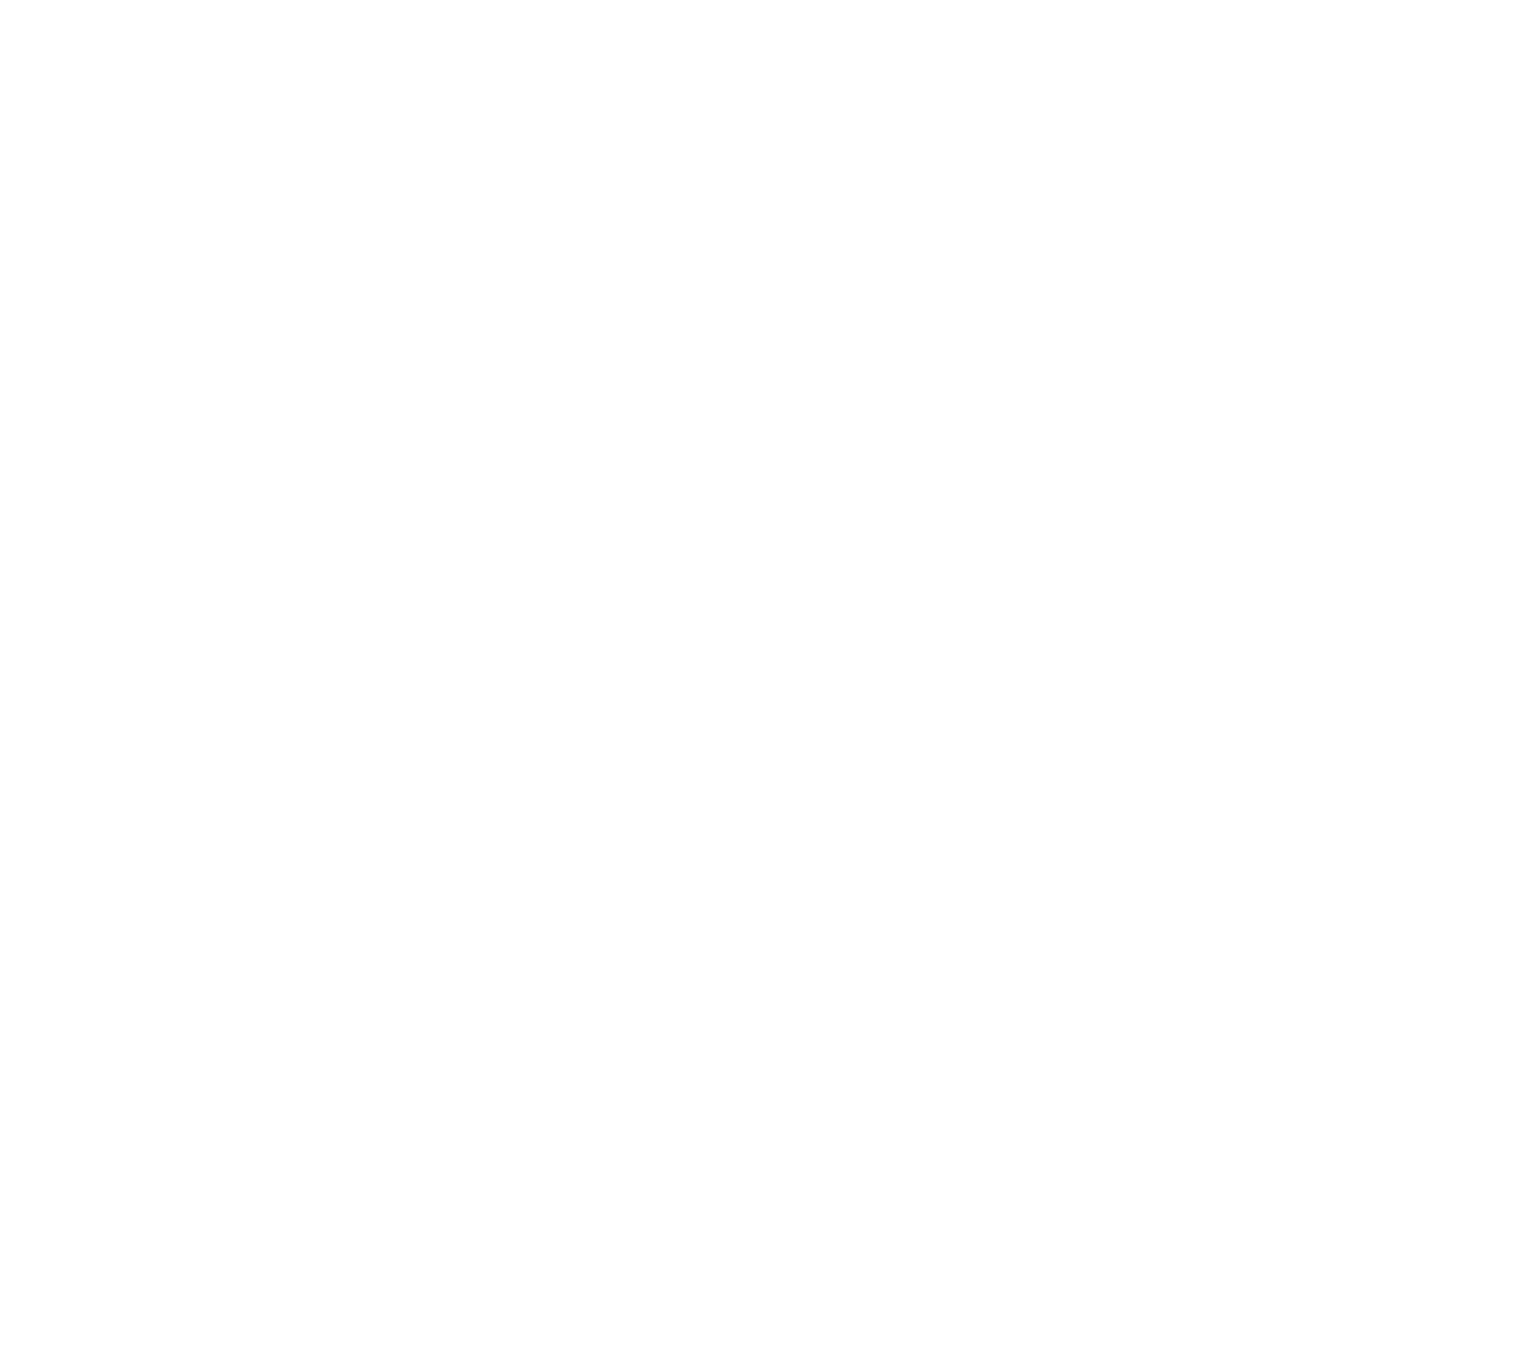 Paragon 28 logo pour fonds sombres (PNG transparent)